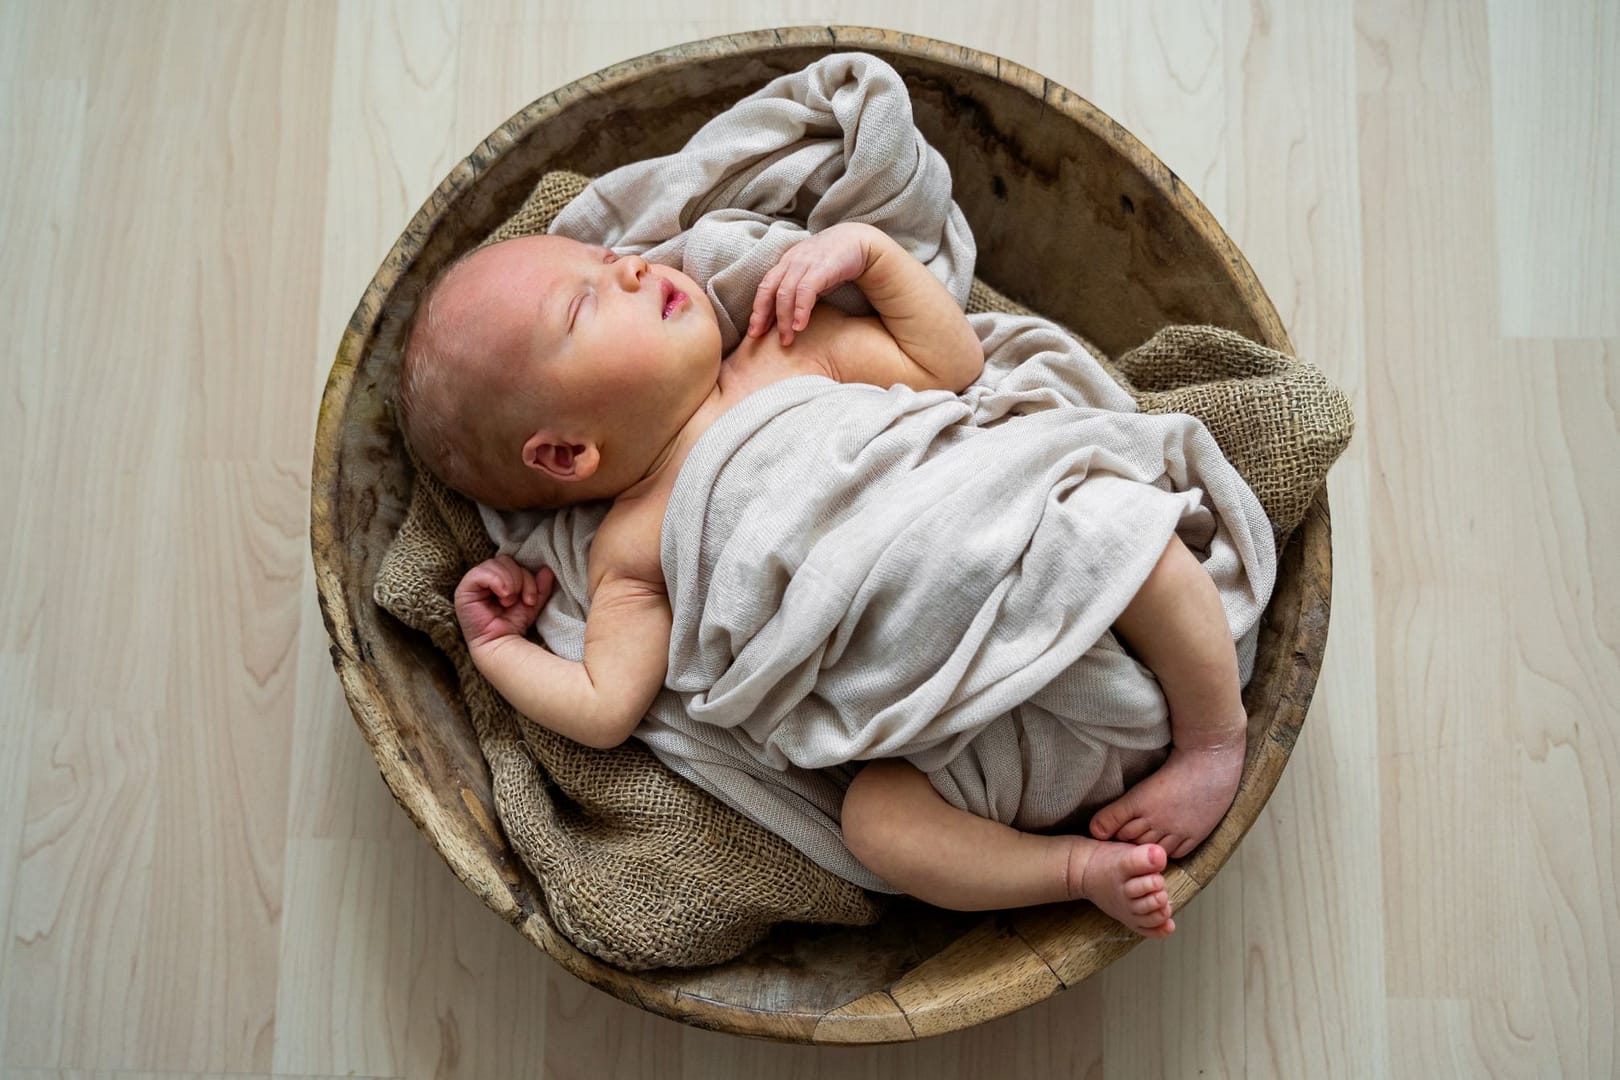 newborn baby fotografie ulm augsburg nuernberg muenchen erlangen allgaeu